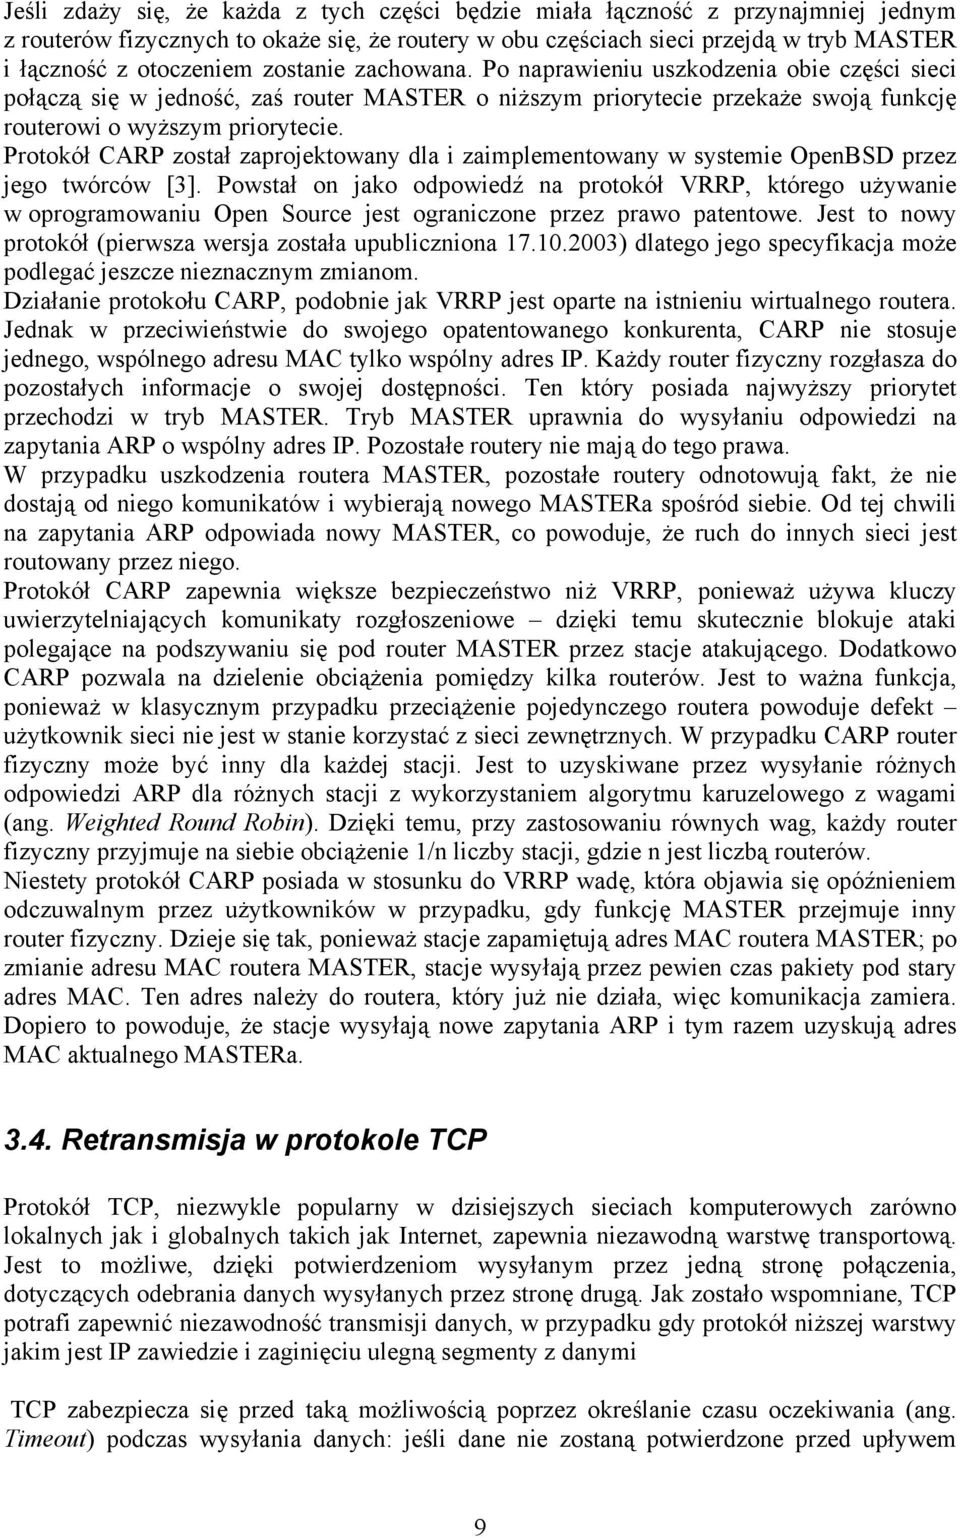 Protokół CARP został zaprojektowany dla i zaimplementowany w systemie OpenBSD przez jego twórców [3].